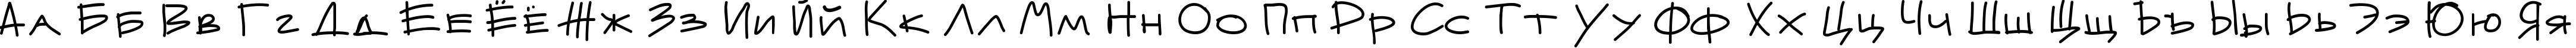 Пример написания русского алфавита шрифтом Mateur